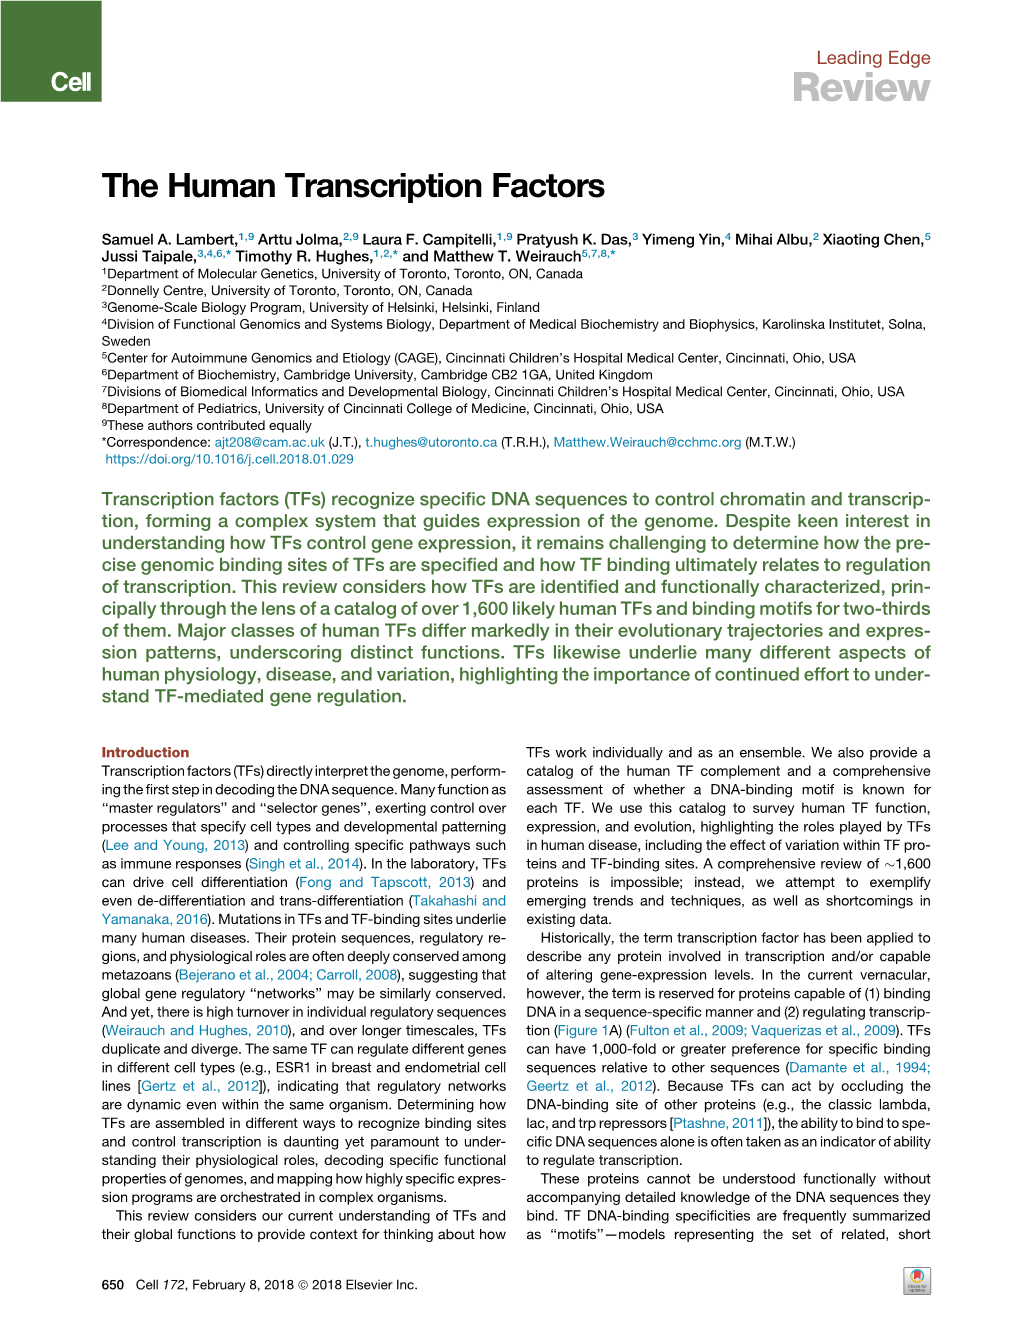 The Human Transcription Factors